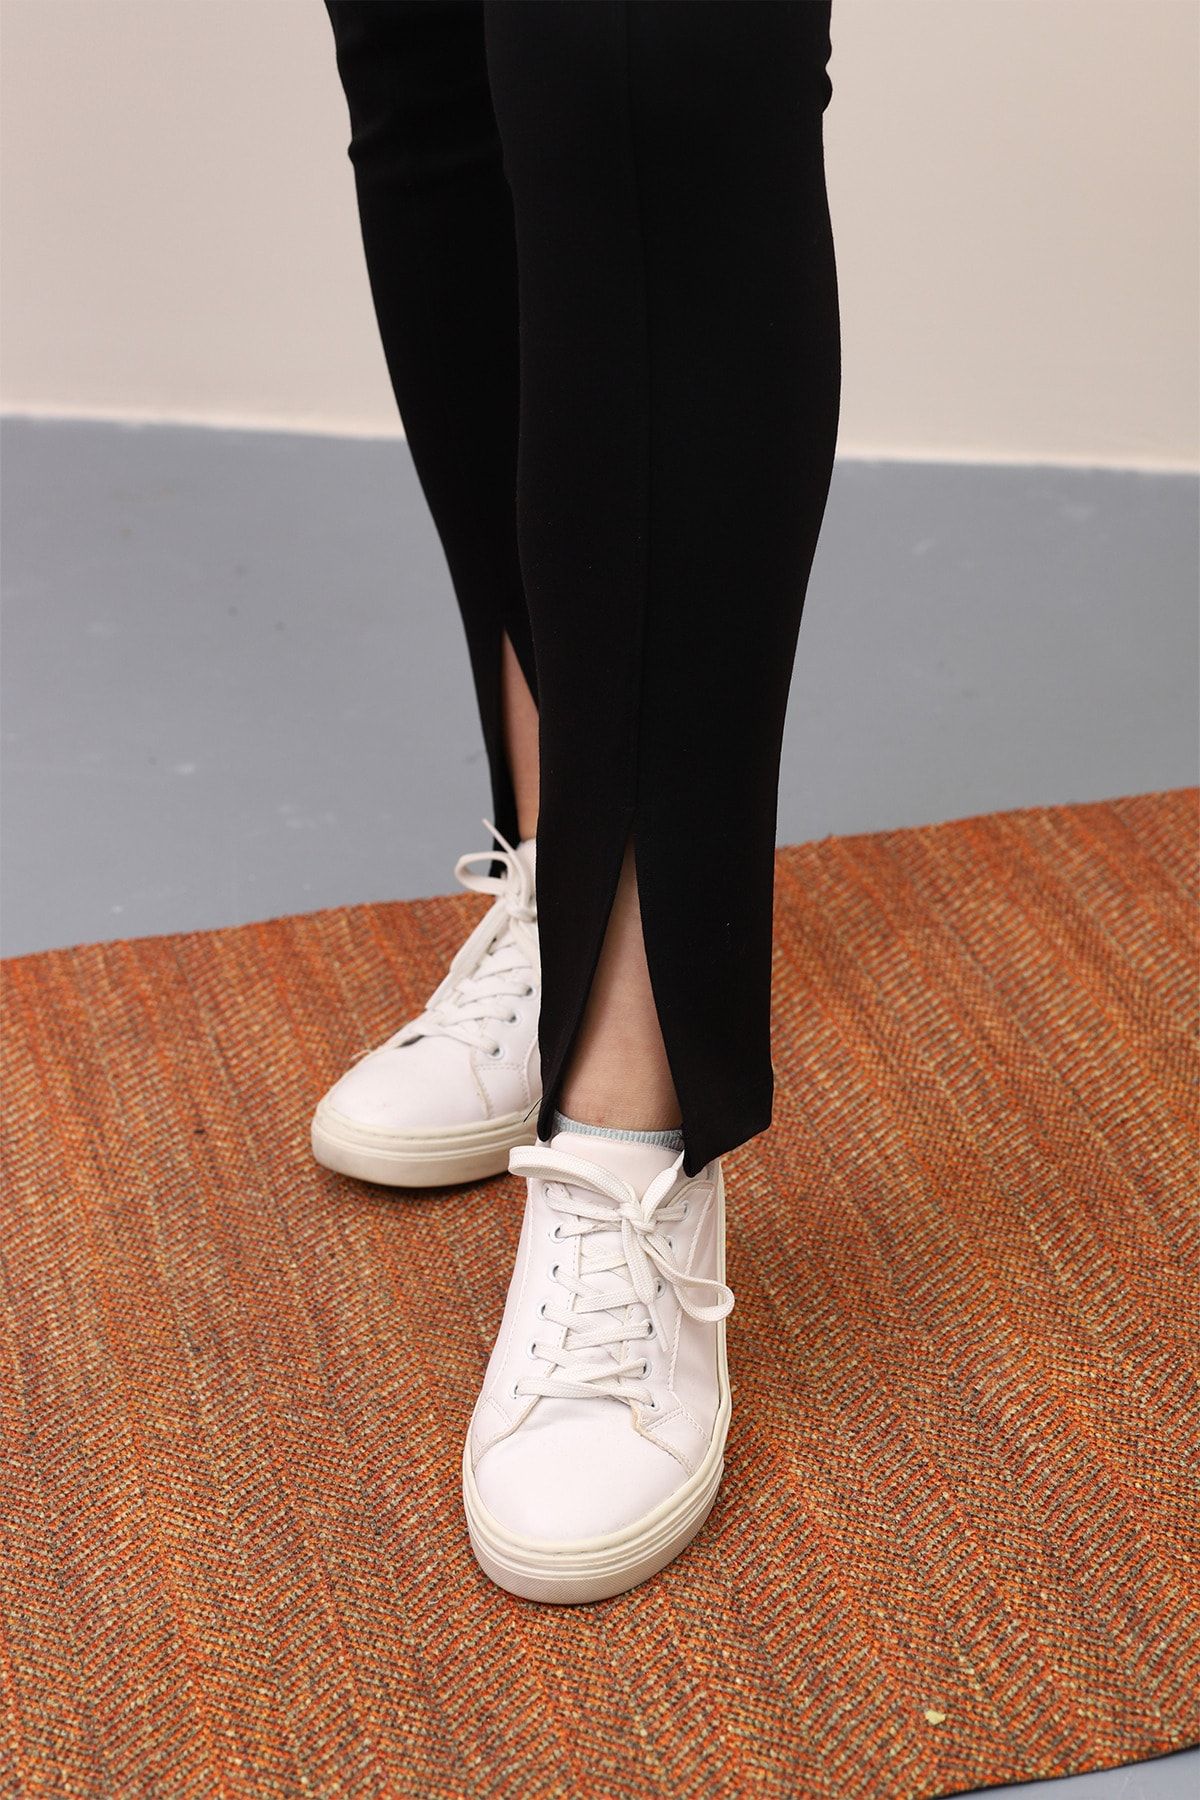 Genel Markalar Kadın Siyah Yırtmaçlı Yüksek Bel Toparlayıcı Lastikli Interlok Çelik Örme Pantolon Tayt